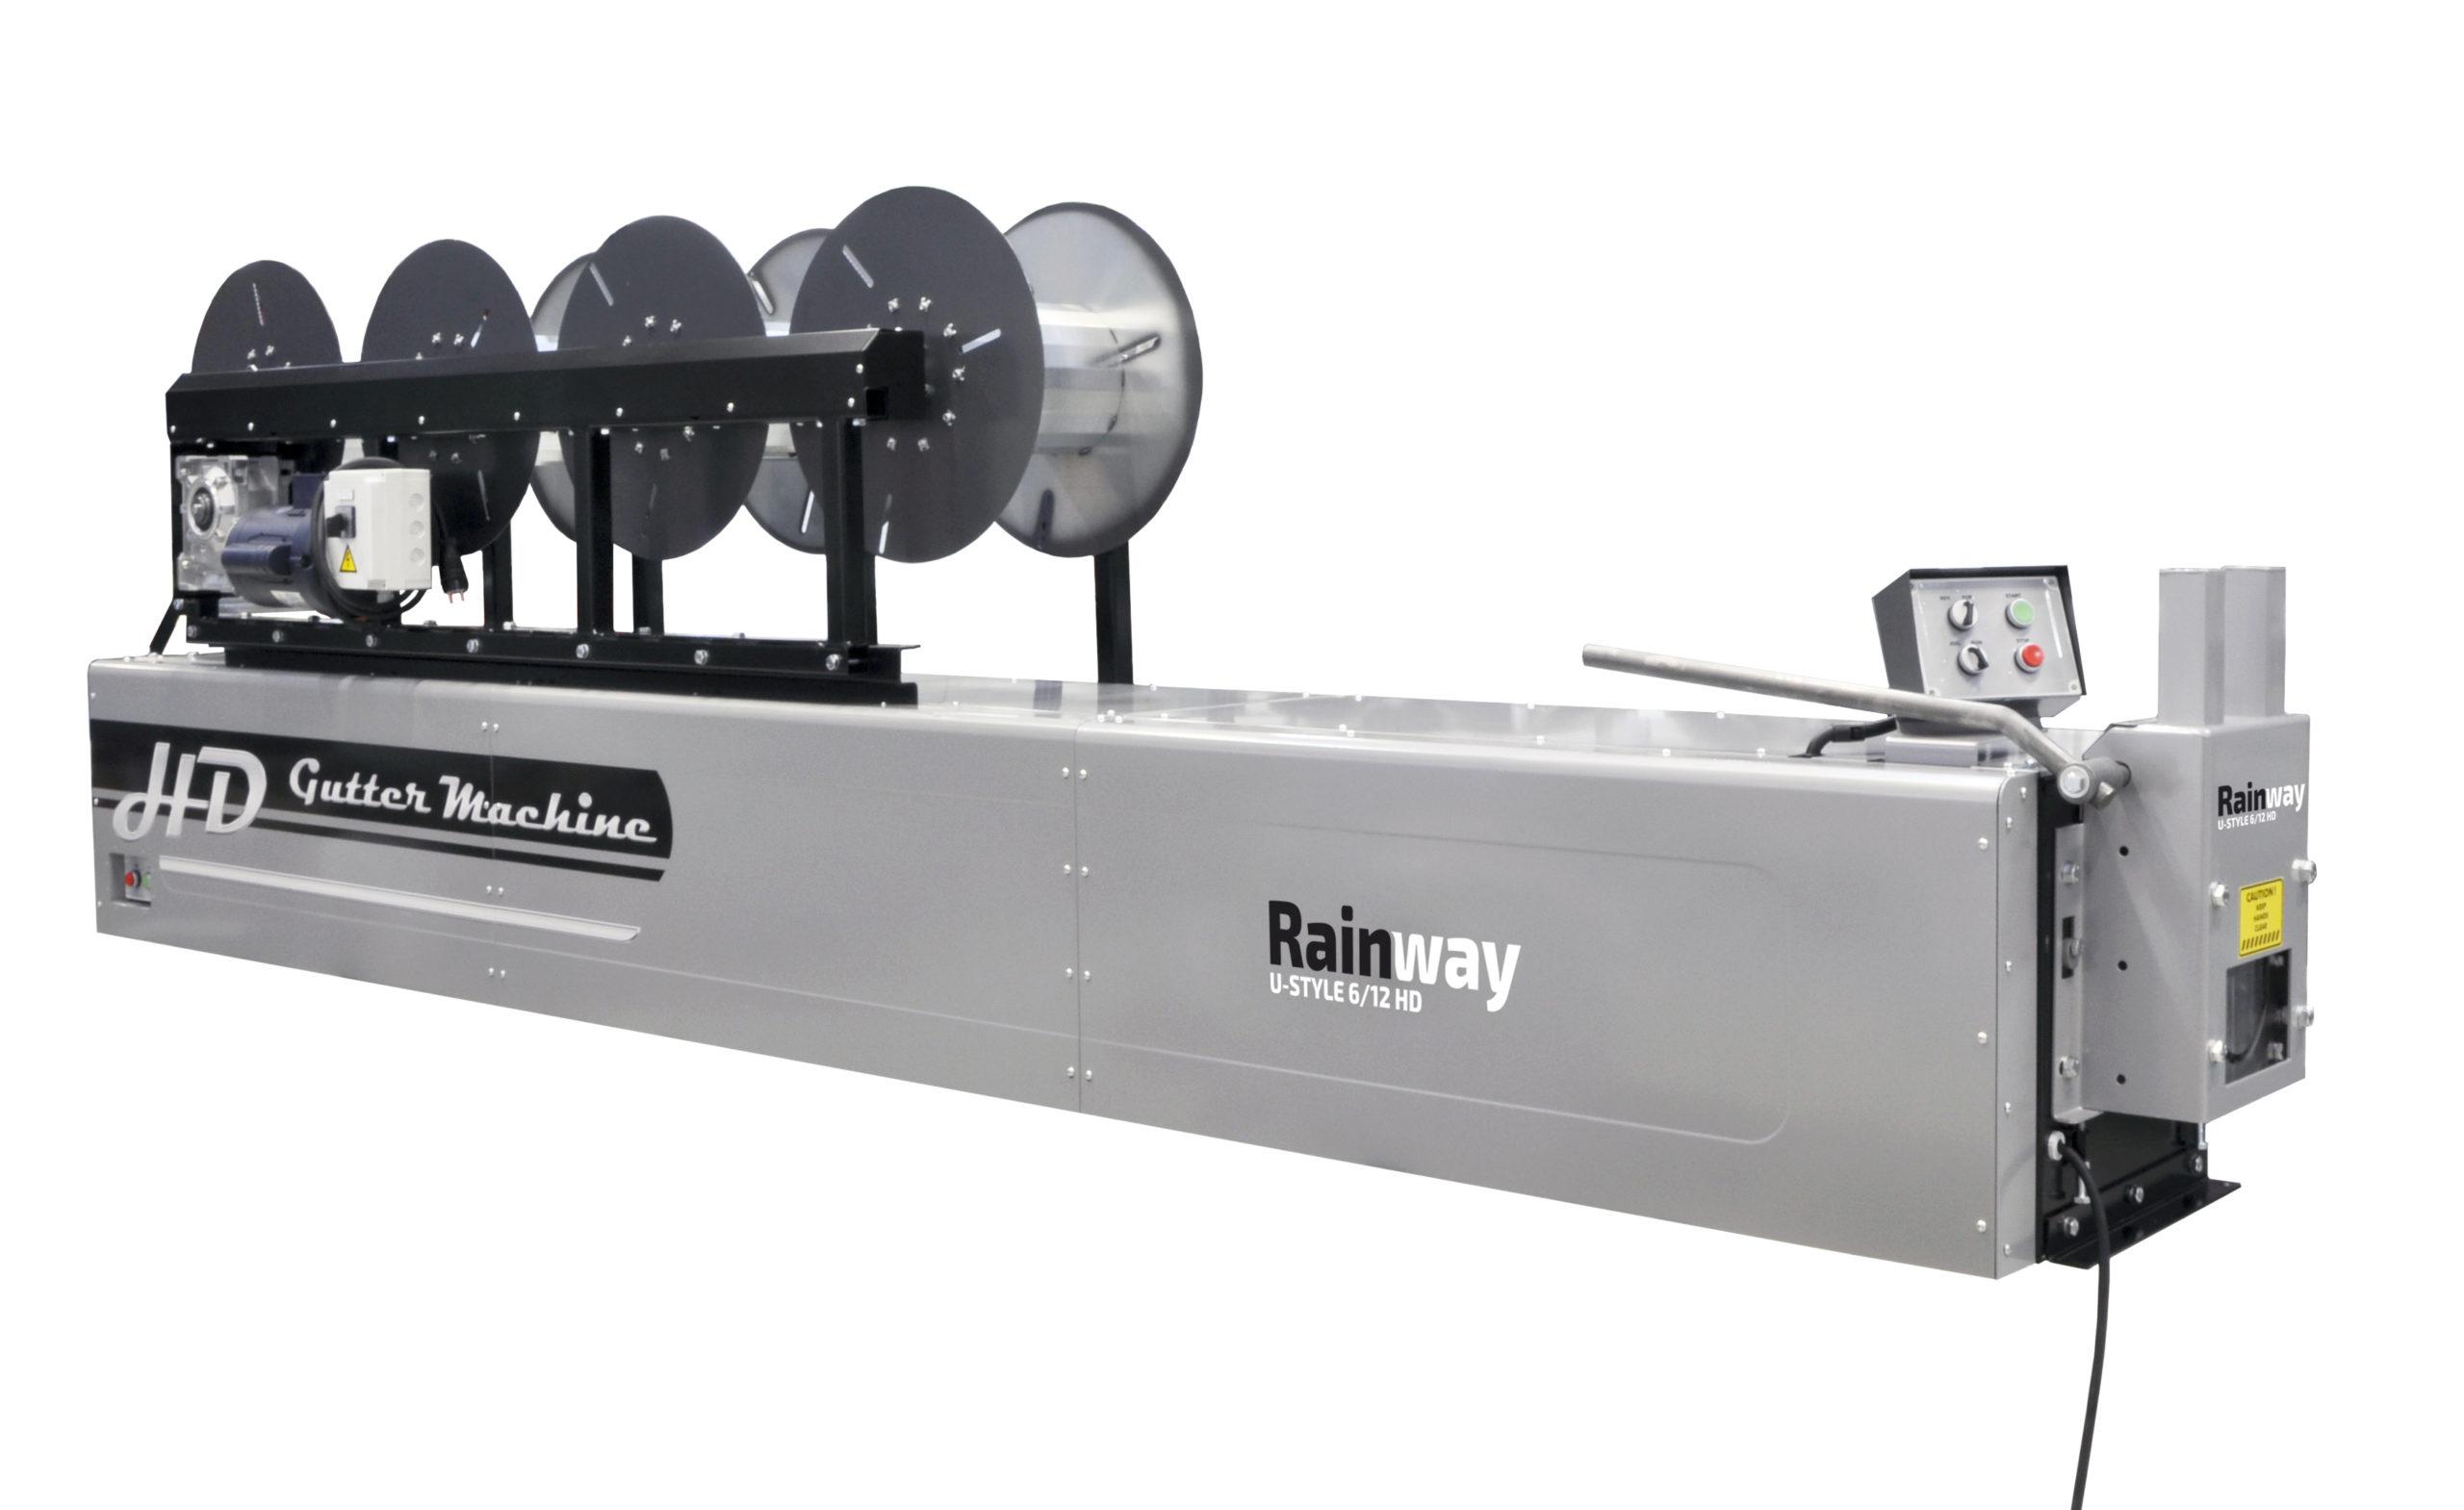 Rainway HD kourukoneet on suunniteltu erityisesti kuparin, alumiinin ja kovemman teräksen työstöön